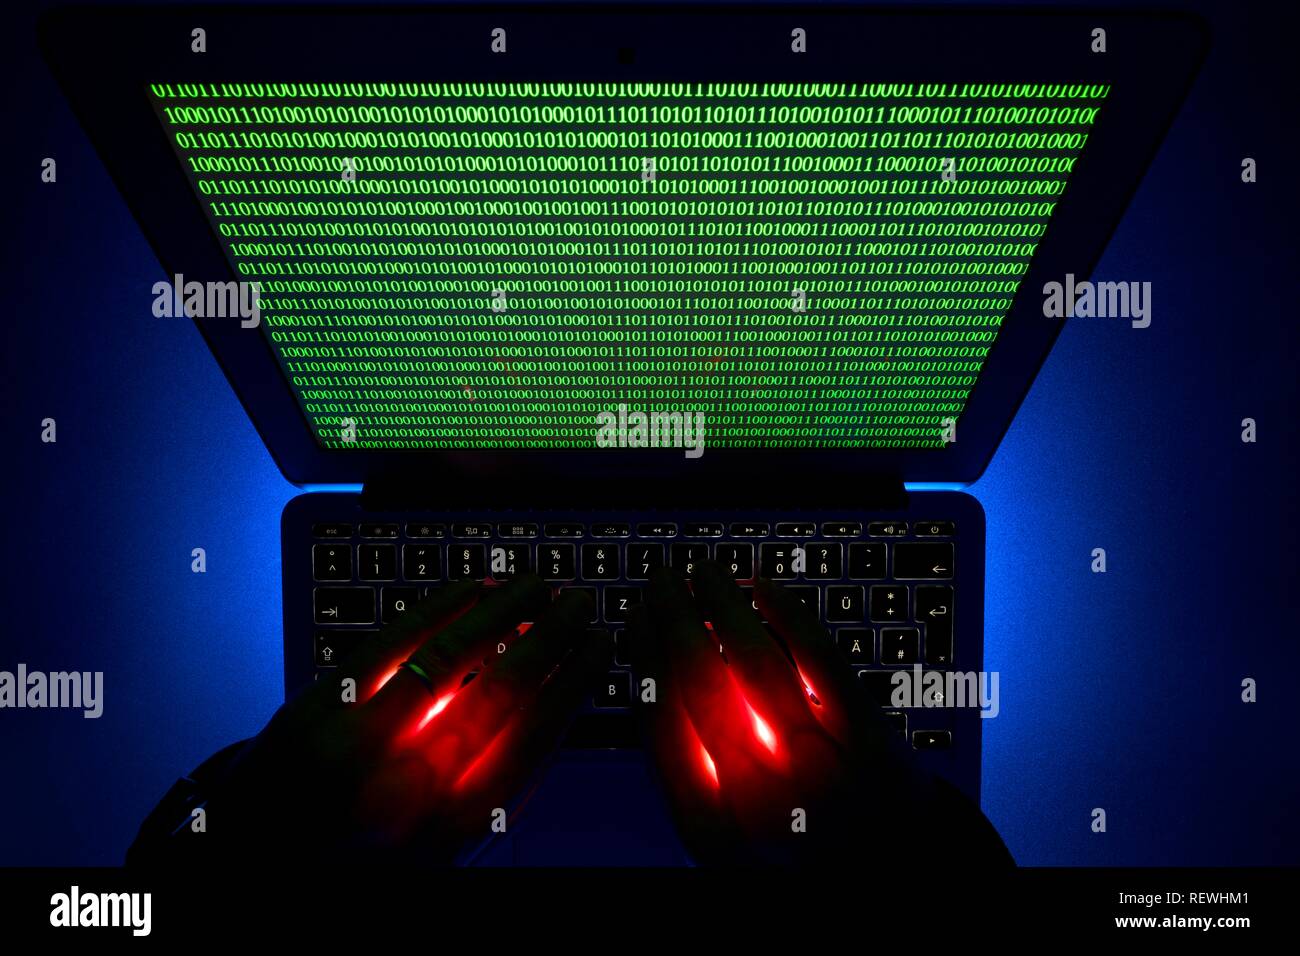 Las manos sobre el teclado del ordenador, la imagen símbolo de la ciberdelincuencia, delitos informáticos, Privacidad, Baden-Württemberg, Alemania Foto de stock